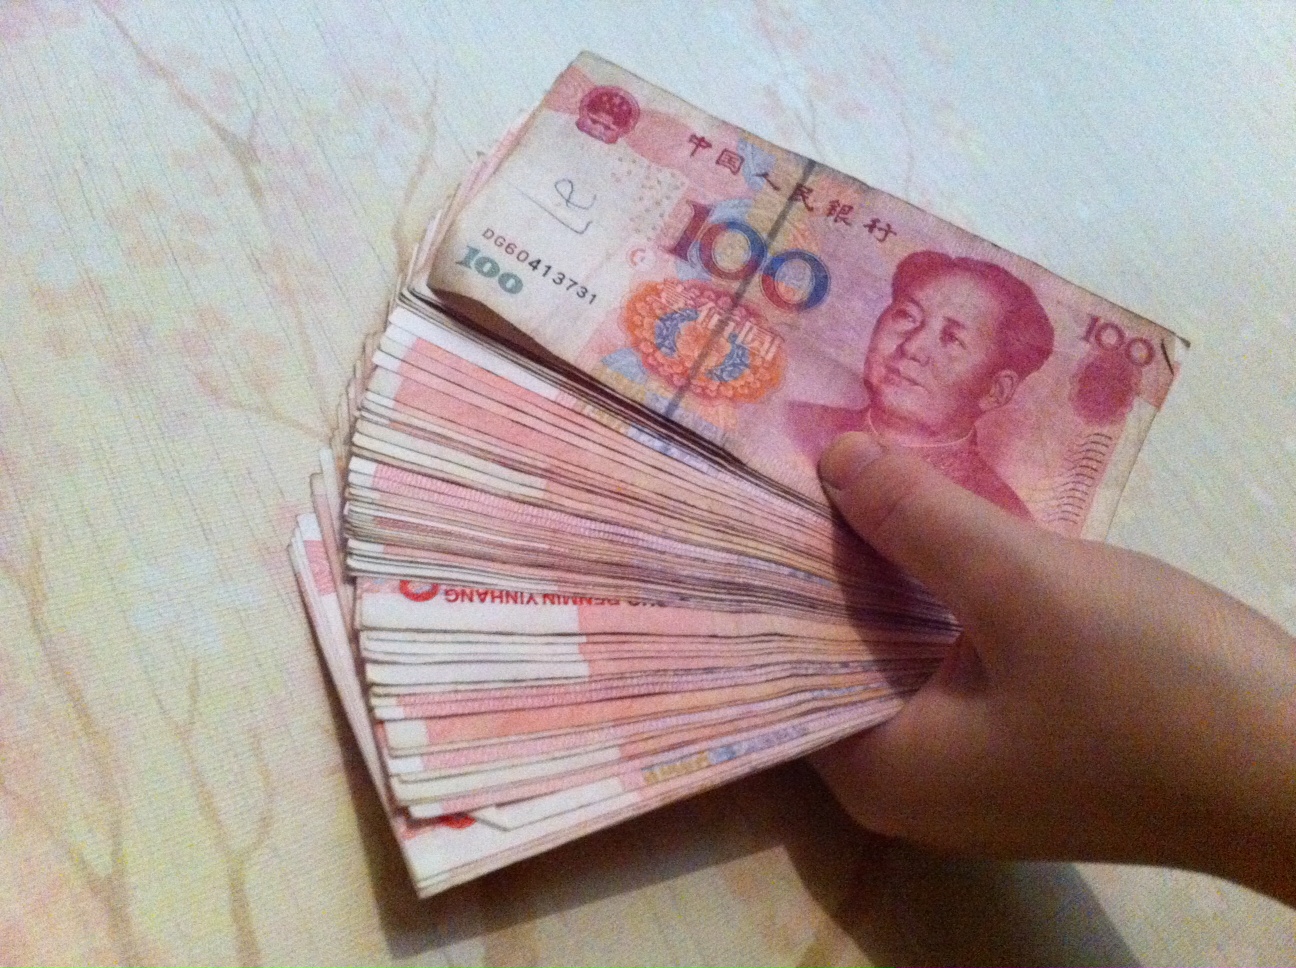 4500 RMB in Hundertern.